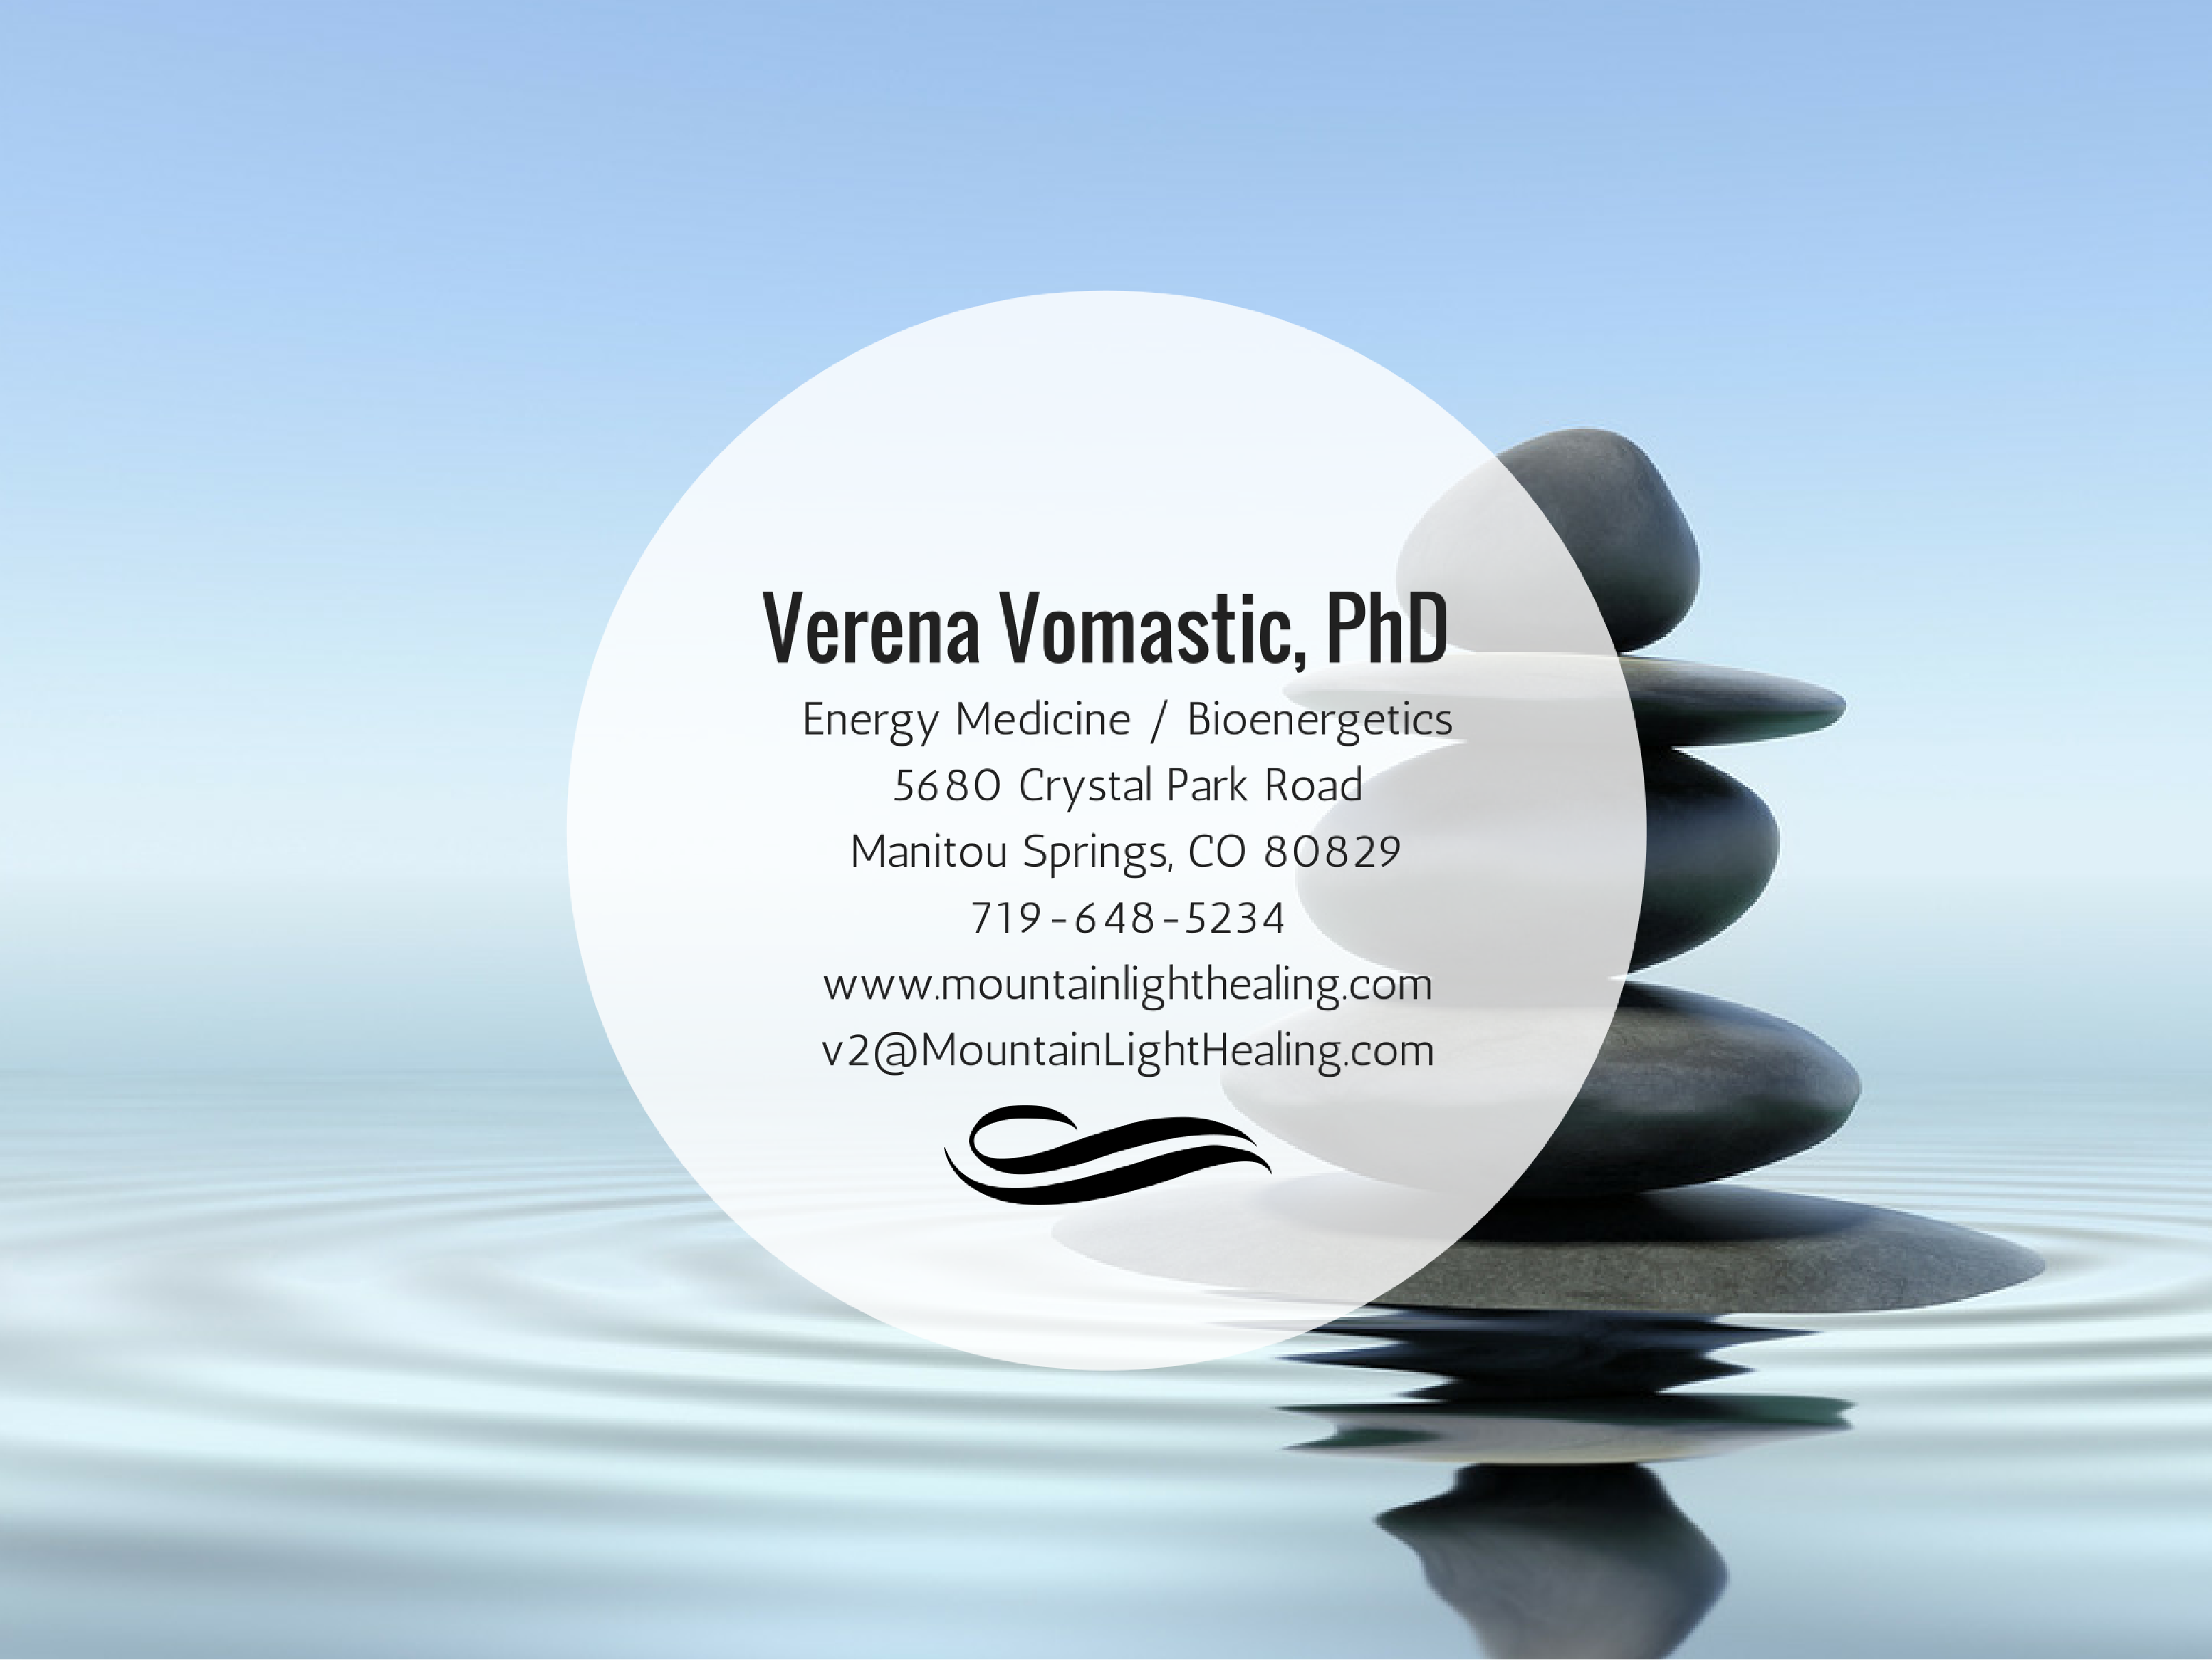 Verena Vomastic, PhD